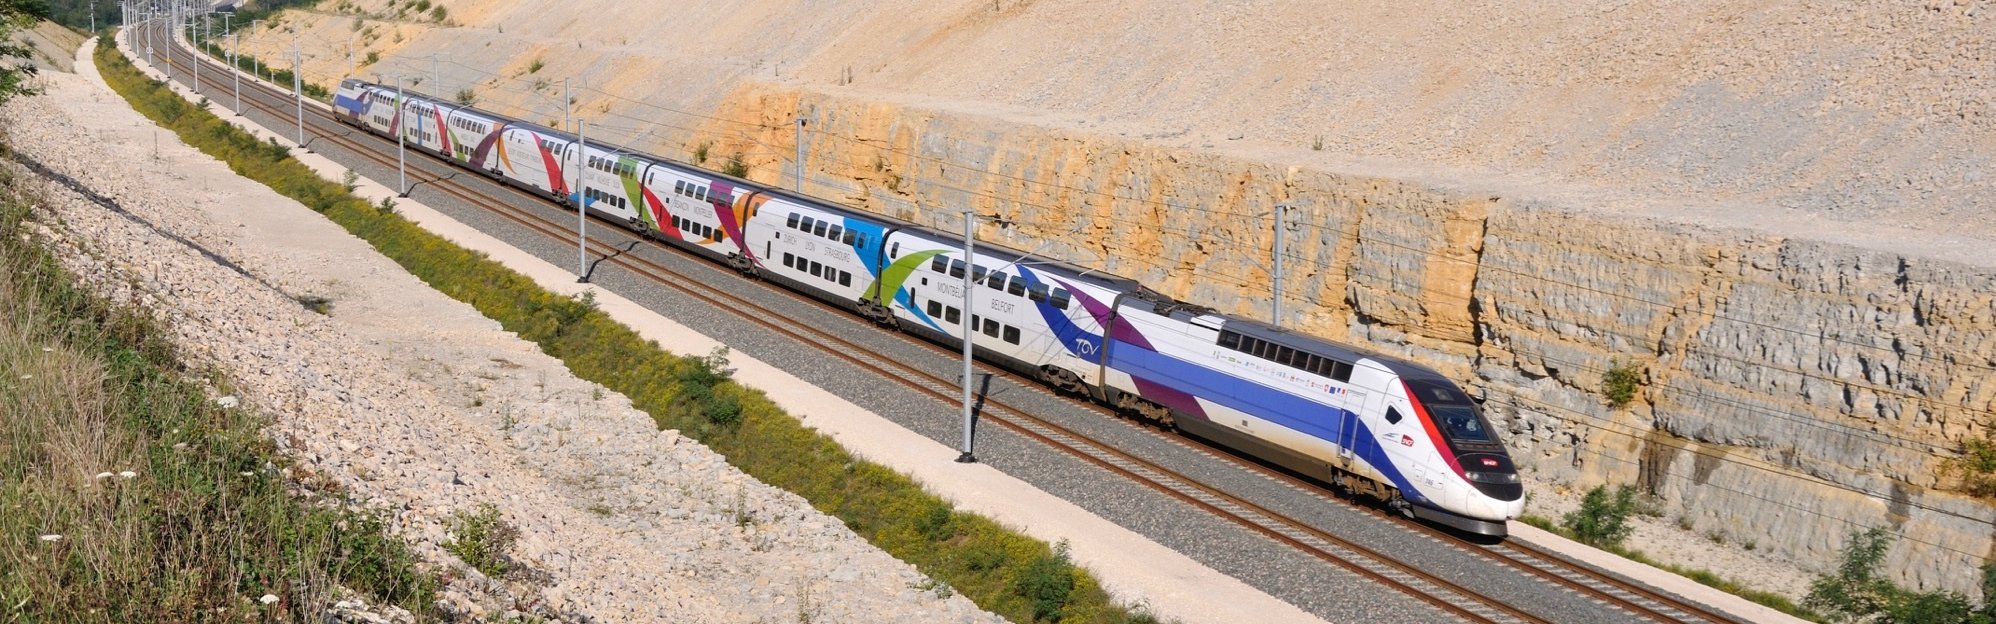 TGV Train in France